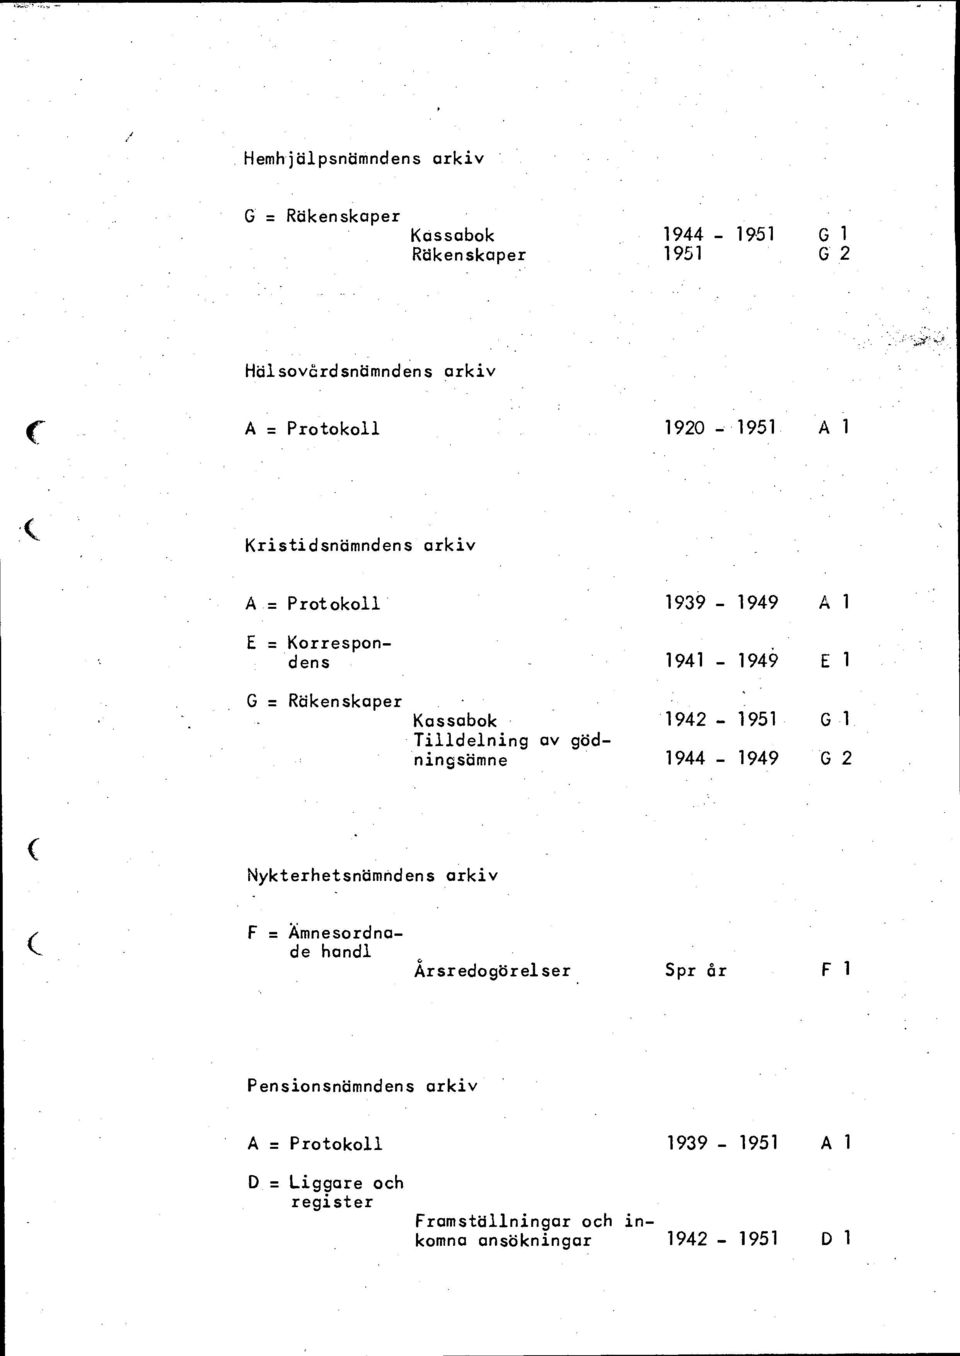 gödningsämne 1944-1949 G 2 Nykterhetsnämndens arkiv F = Ämnesordnade handl Årsredogörelser Spr år Fl